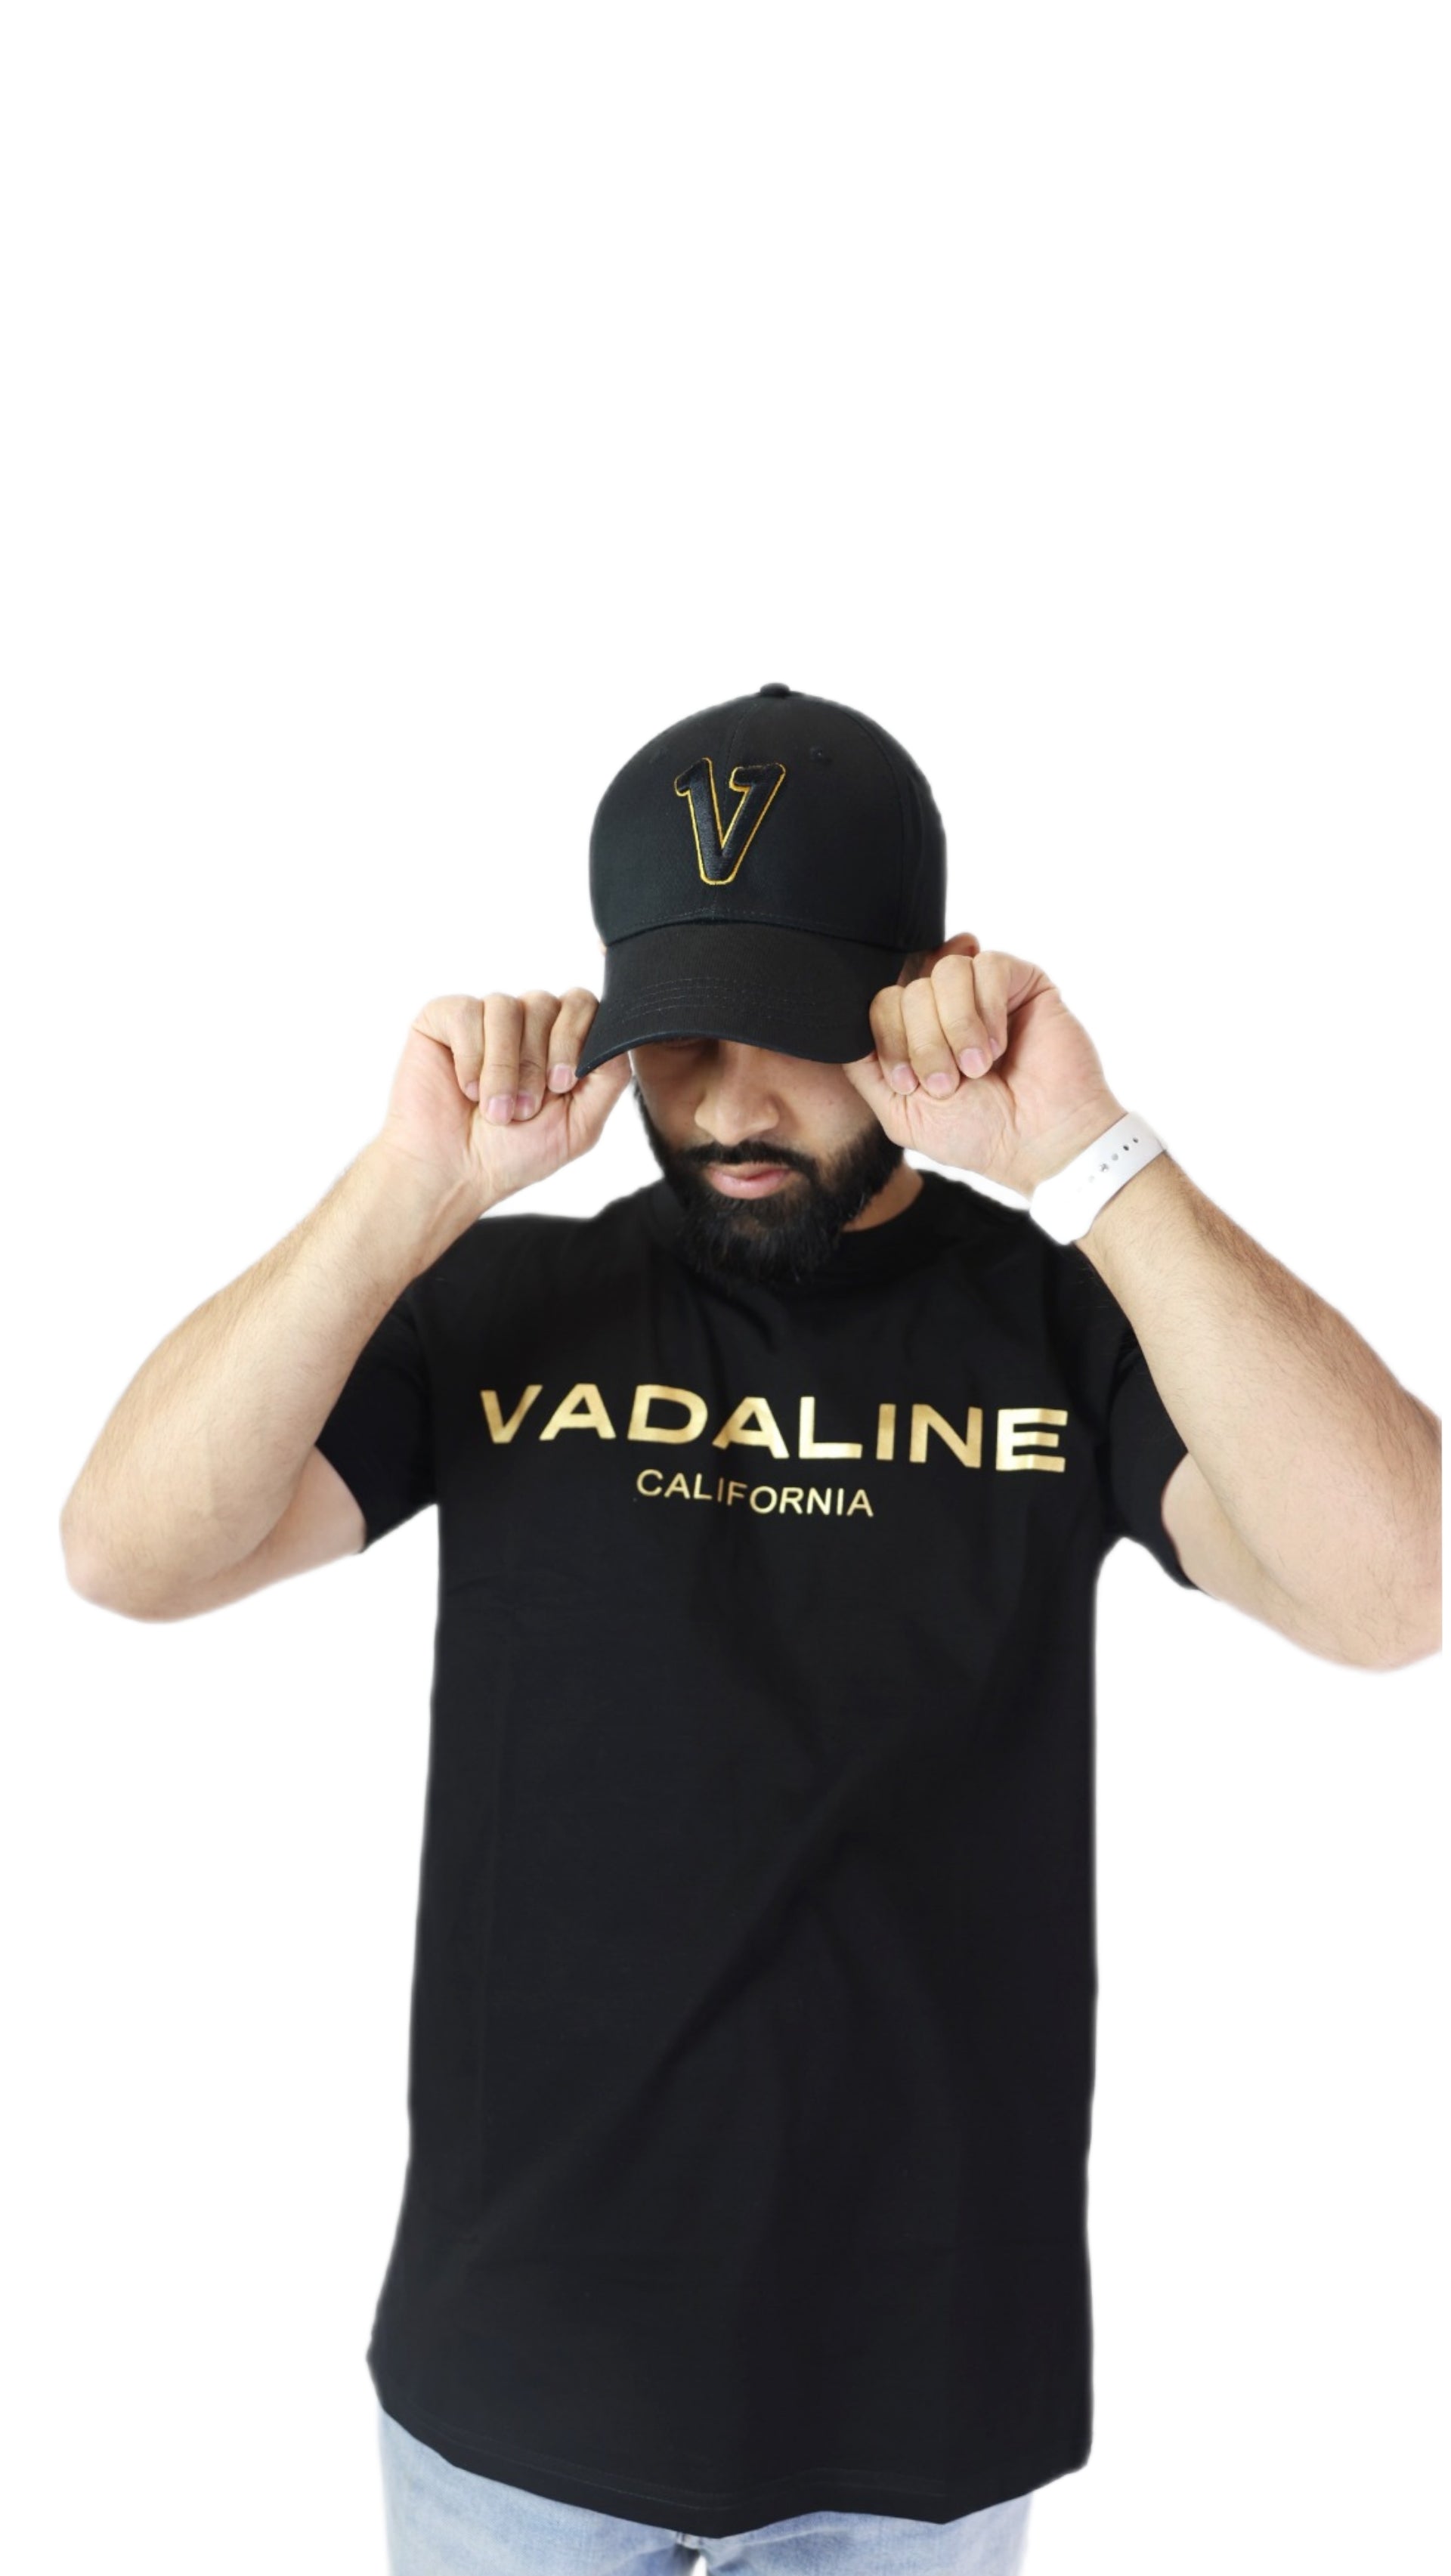 Bạn yêu thích những chiếc áo có độc đáo và khỏe khoắn? Hãy truy cập vào hình ảnh để xem chiếc áo VADALINE Signature - một mẫu áo cao cấp với chữ ký đắt giá được thêu trên ngực.